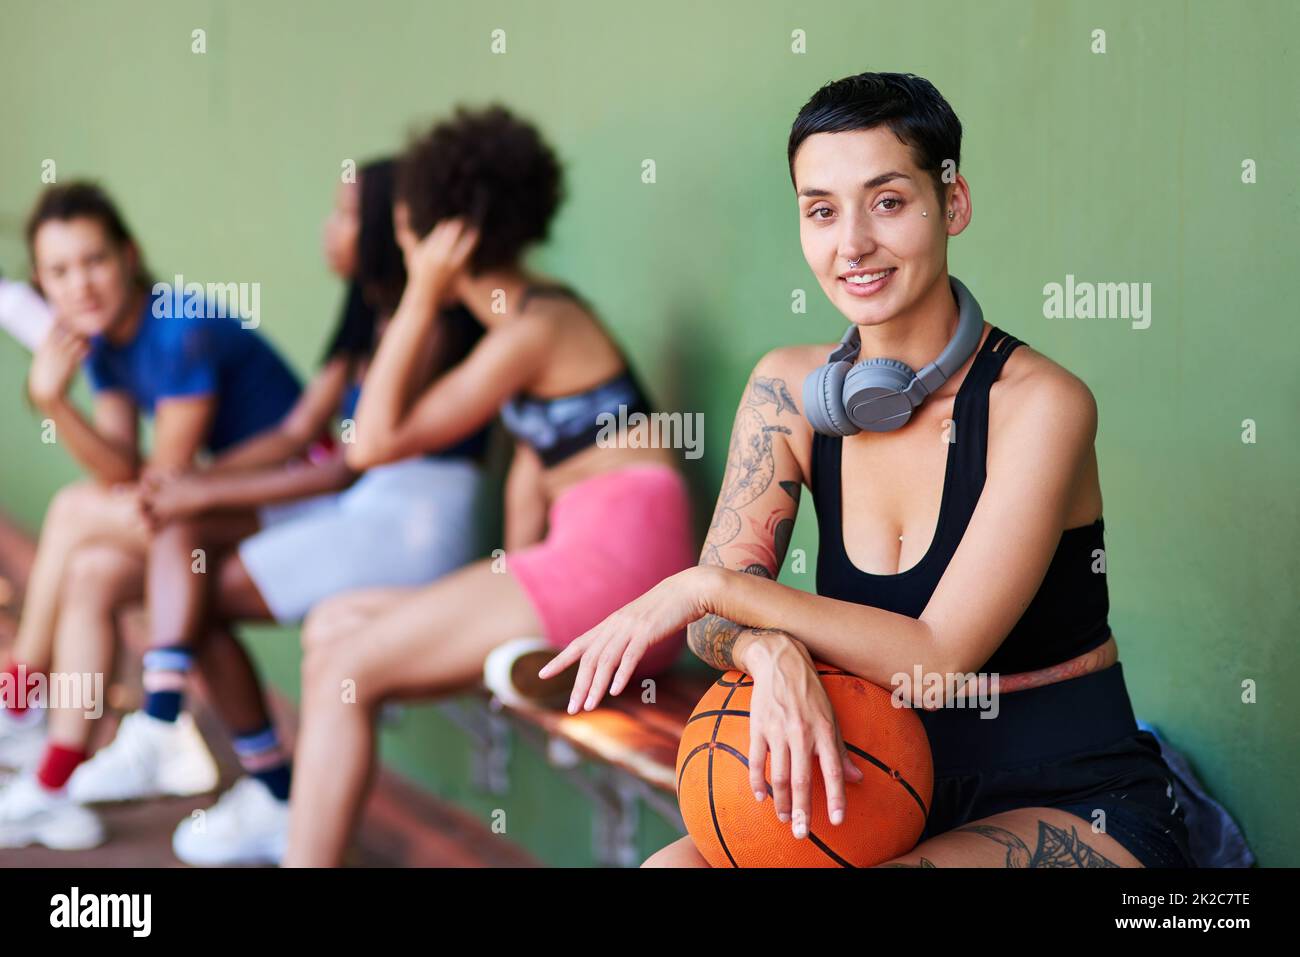 Gioca sempre con tutto il tuo cuore. Ritratto di una giovane donna sportiva che fa una pausa con i suoi amici dopo una partita di basket. Foto Stock